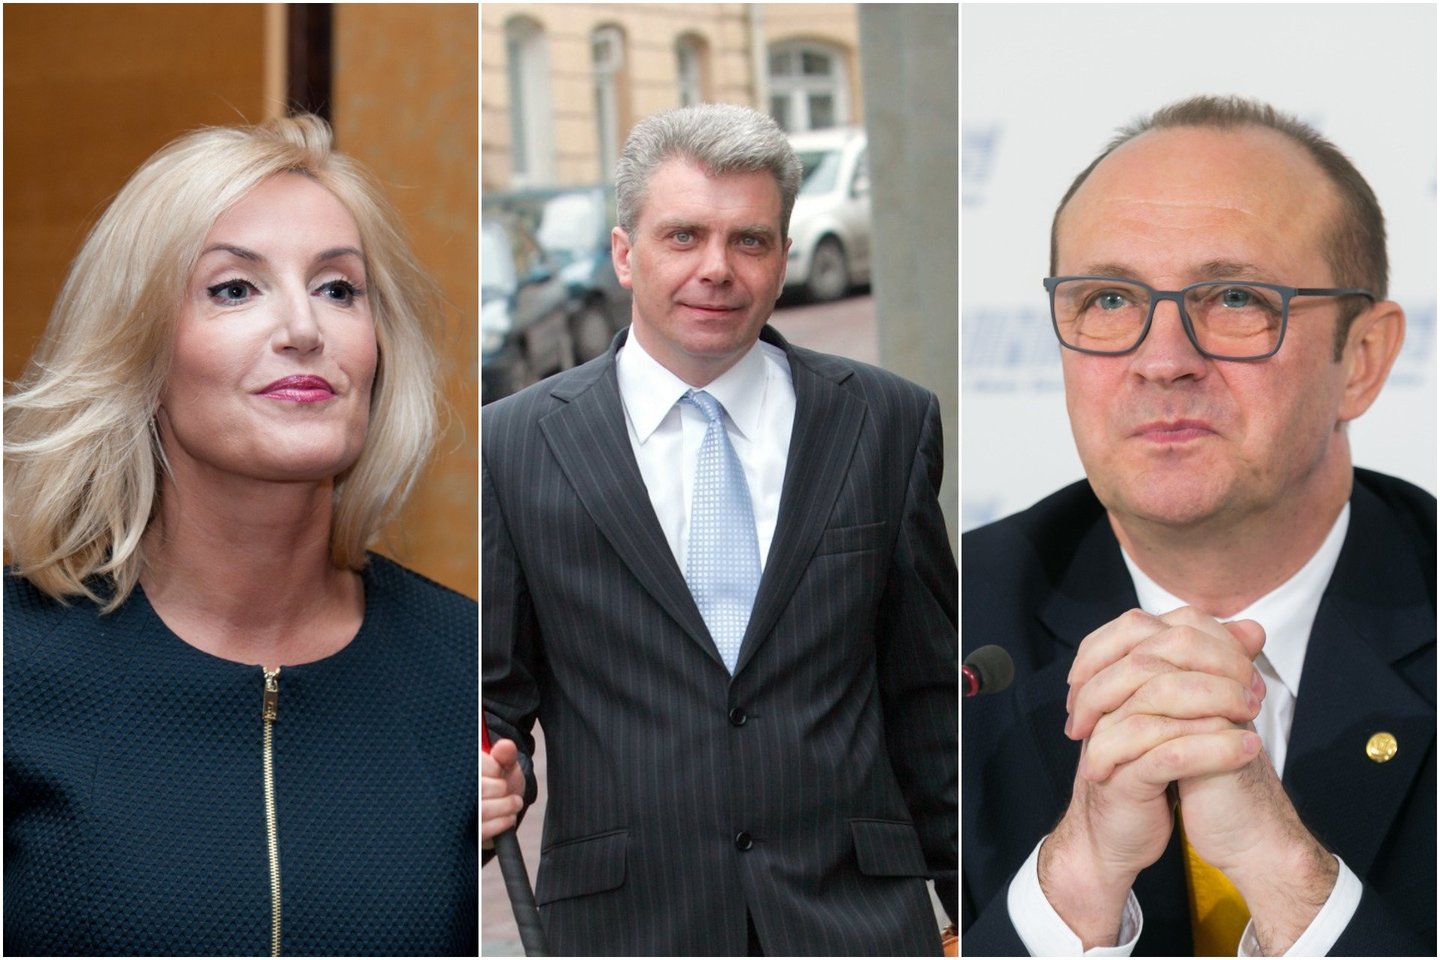  Nei teistumo, nei įtarimų rinkėjai nelaiko politiko trūkumu. Iš kairės: Ž.Pinskuvienė, A.Katinas, R.Malinauskas.<br> lrytas.lt montažas.